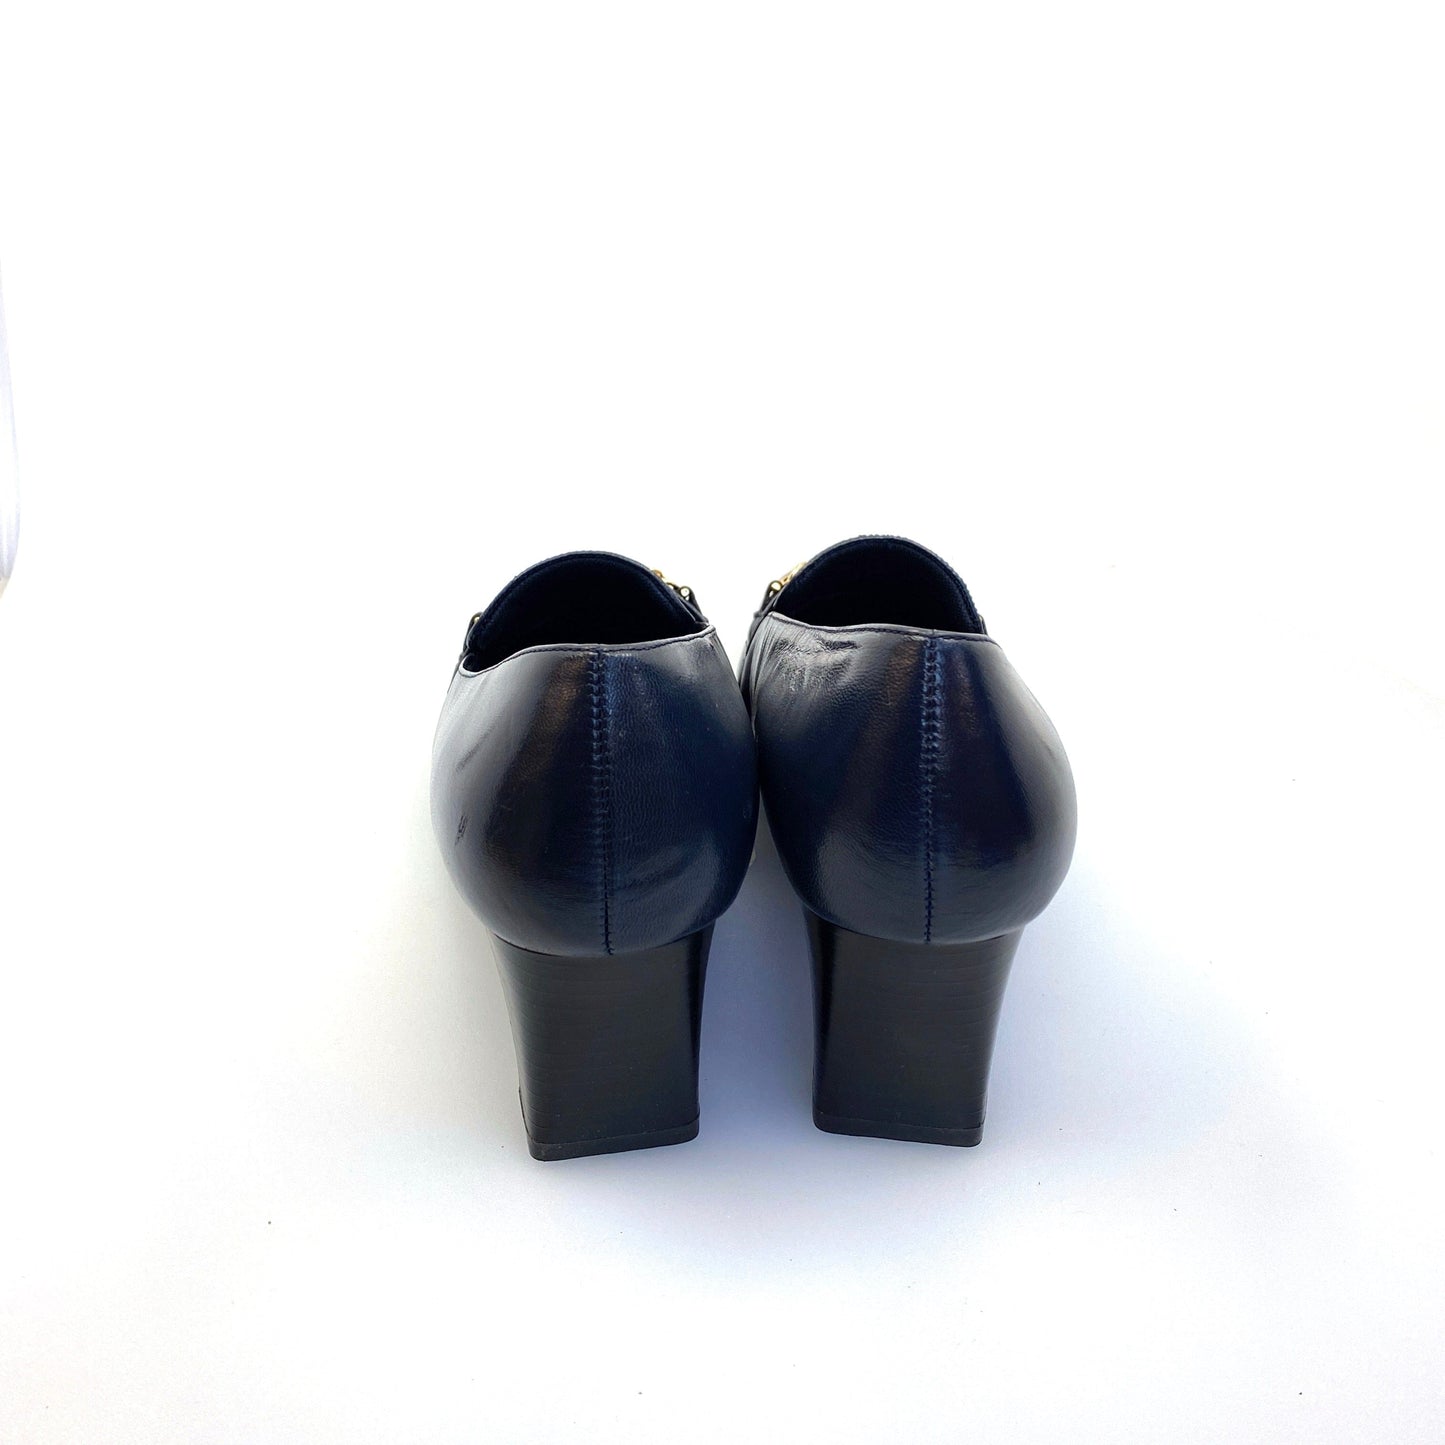 Stylish VILLAGER Liz Claiborne Womens Size 6W Blue Leather Heels Pumps Shoes